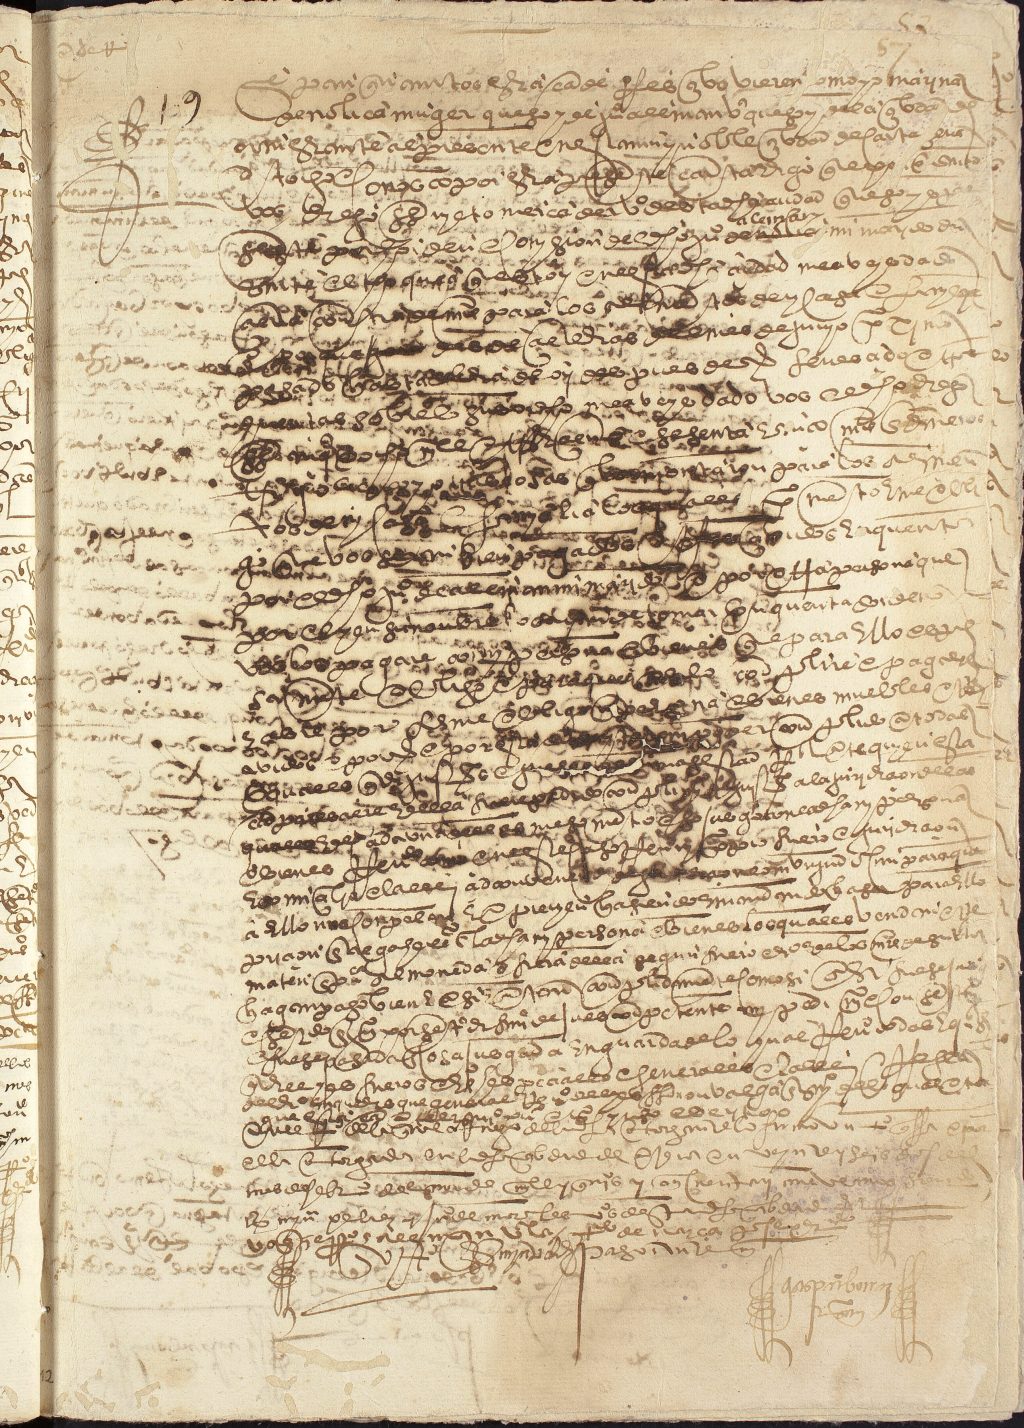 Carta de recibo de Marina de Nolica, mujer de Juan Alemán, a favor de Diego Sarmiento, mercader, por los ocho mil trescientos sesenta y cinco maravedíes que le había prestado.